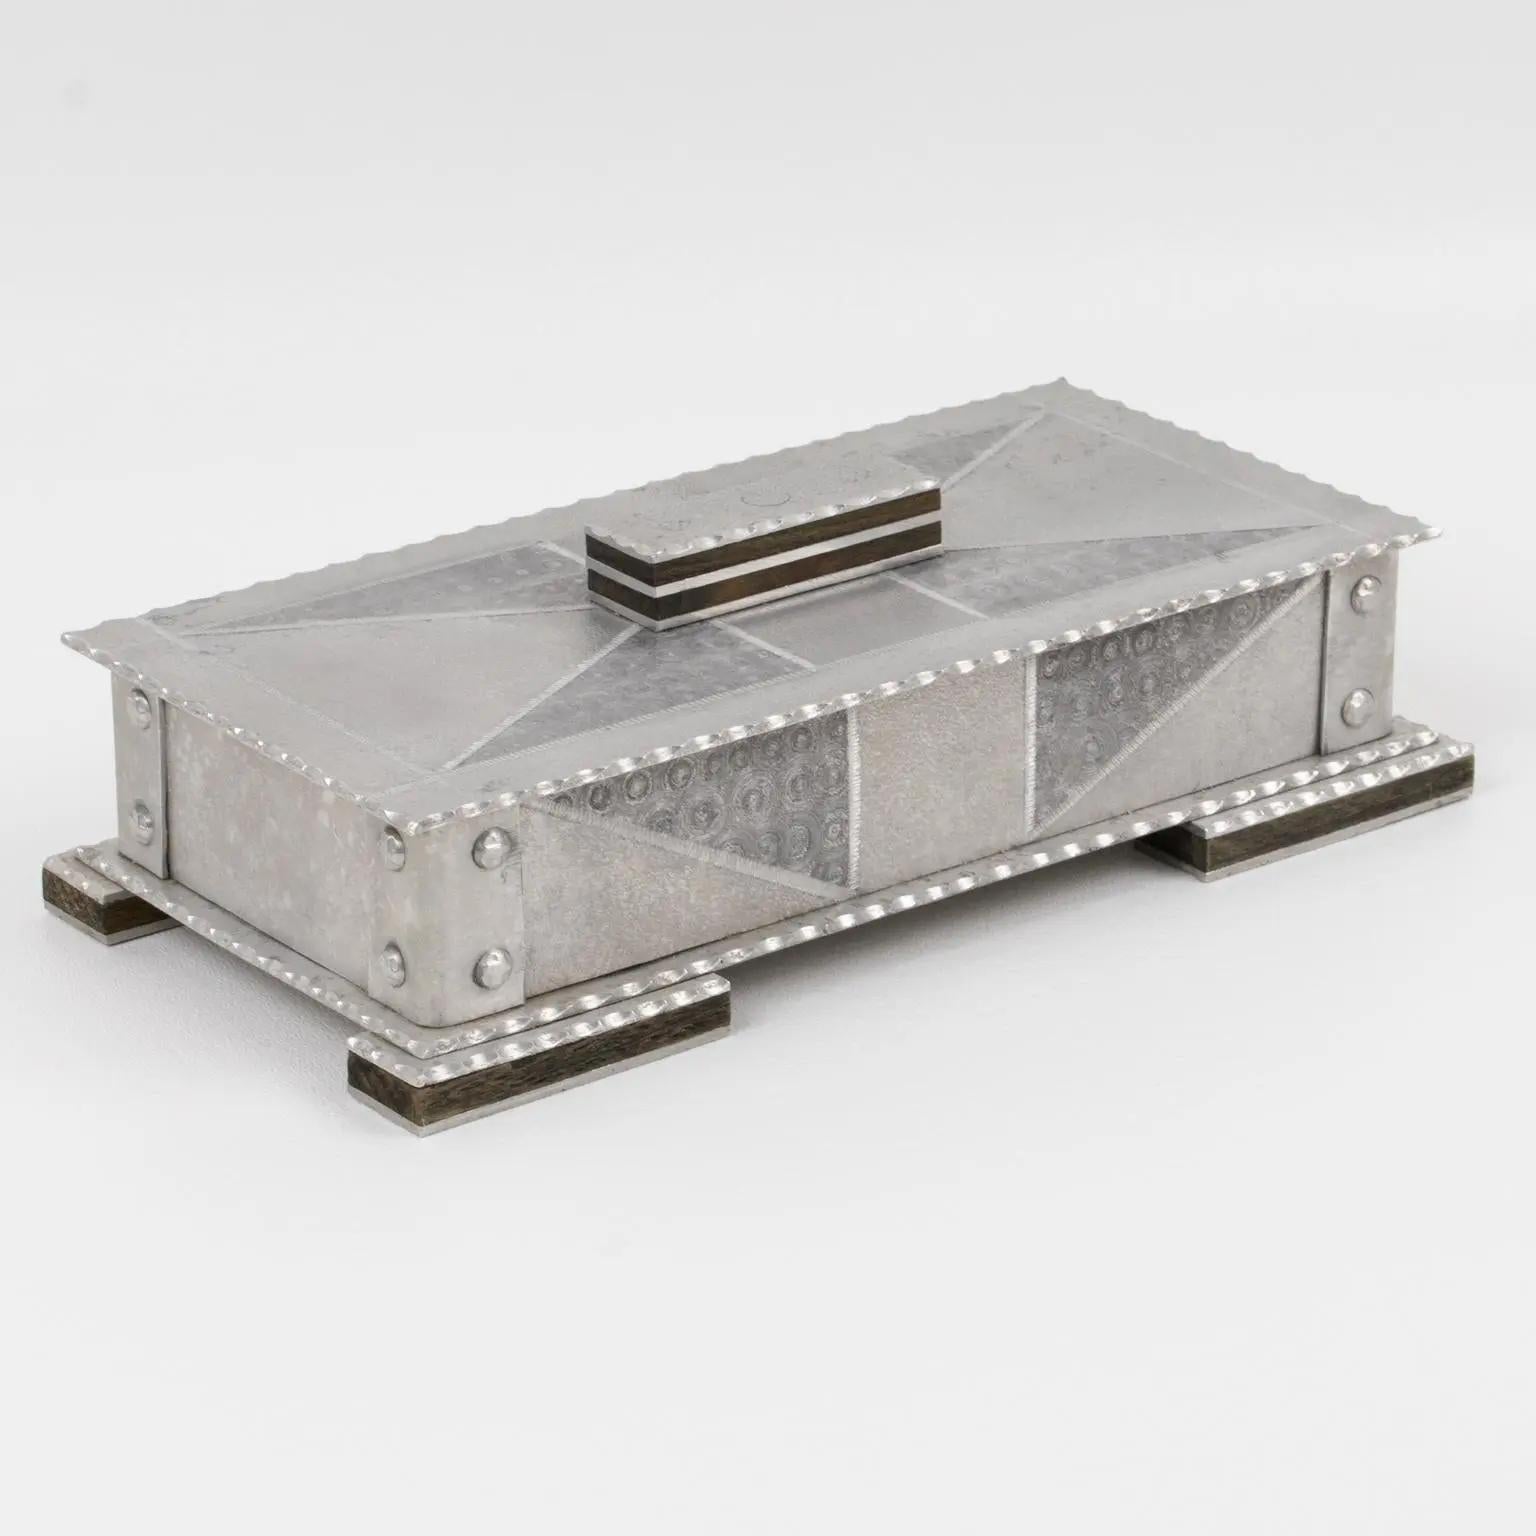 Il s'agit d'une superbe boîte décorative en aluminium datant du début du 20e siècle. Le design présente des détails en bois et une forme industrielle moderniste de type Bauhaus ou Arts & Crafts. Il s'agit d'une grande forme rectangulaire ornée d'un